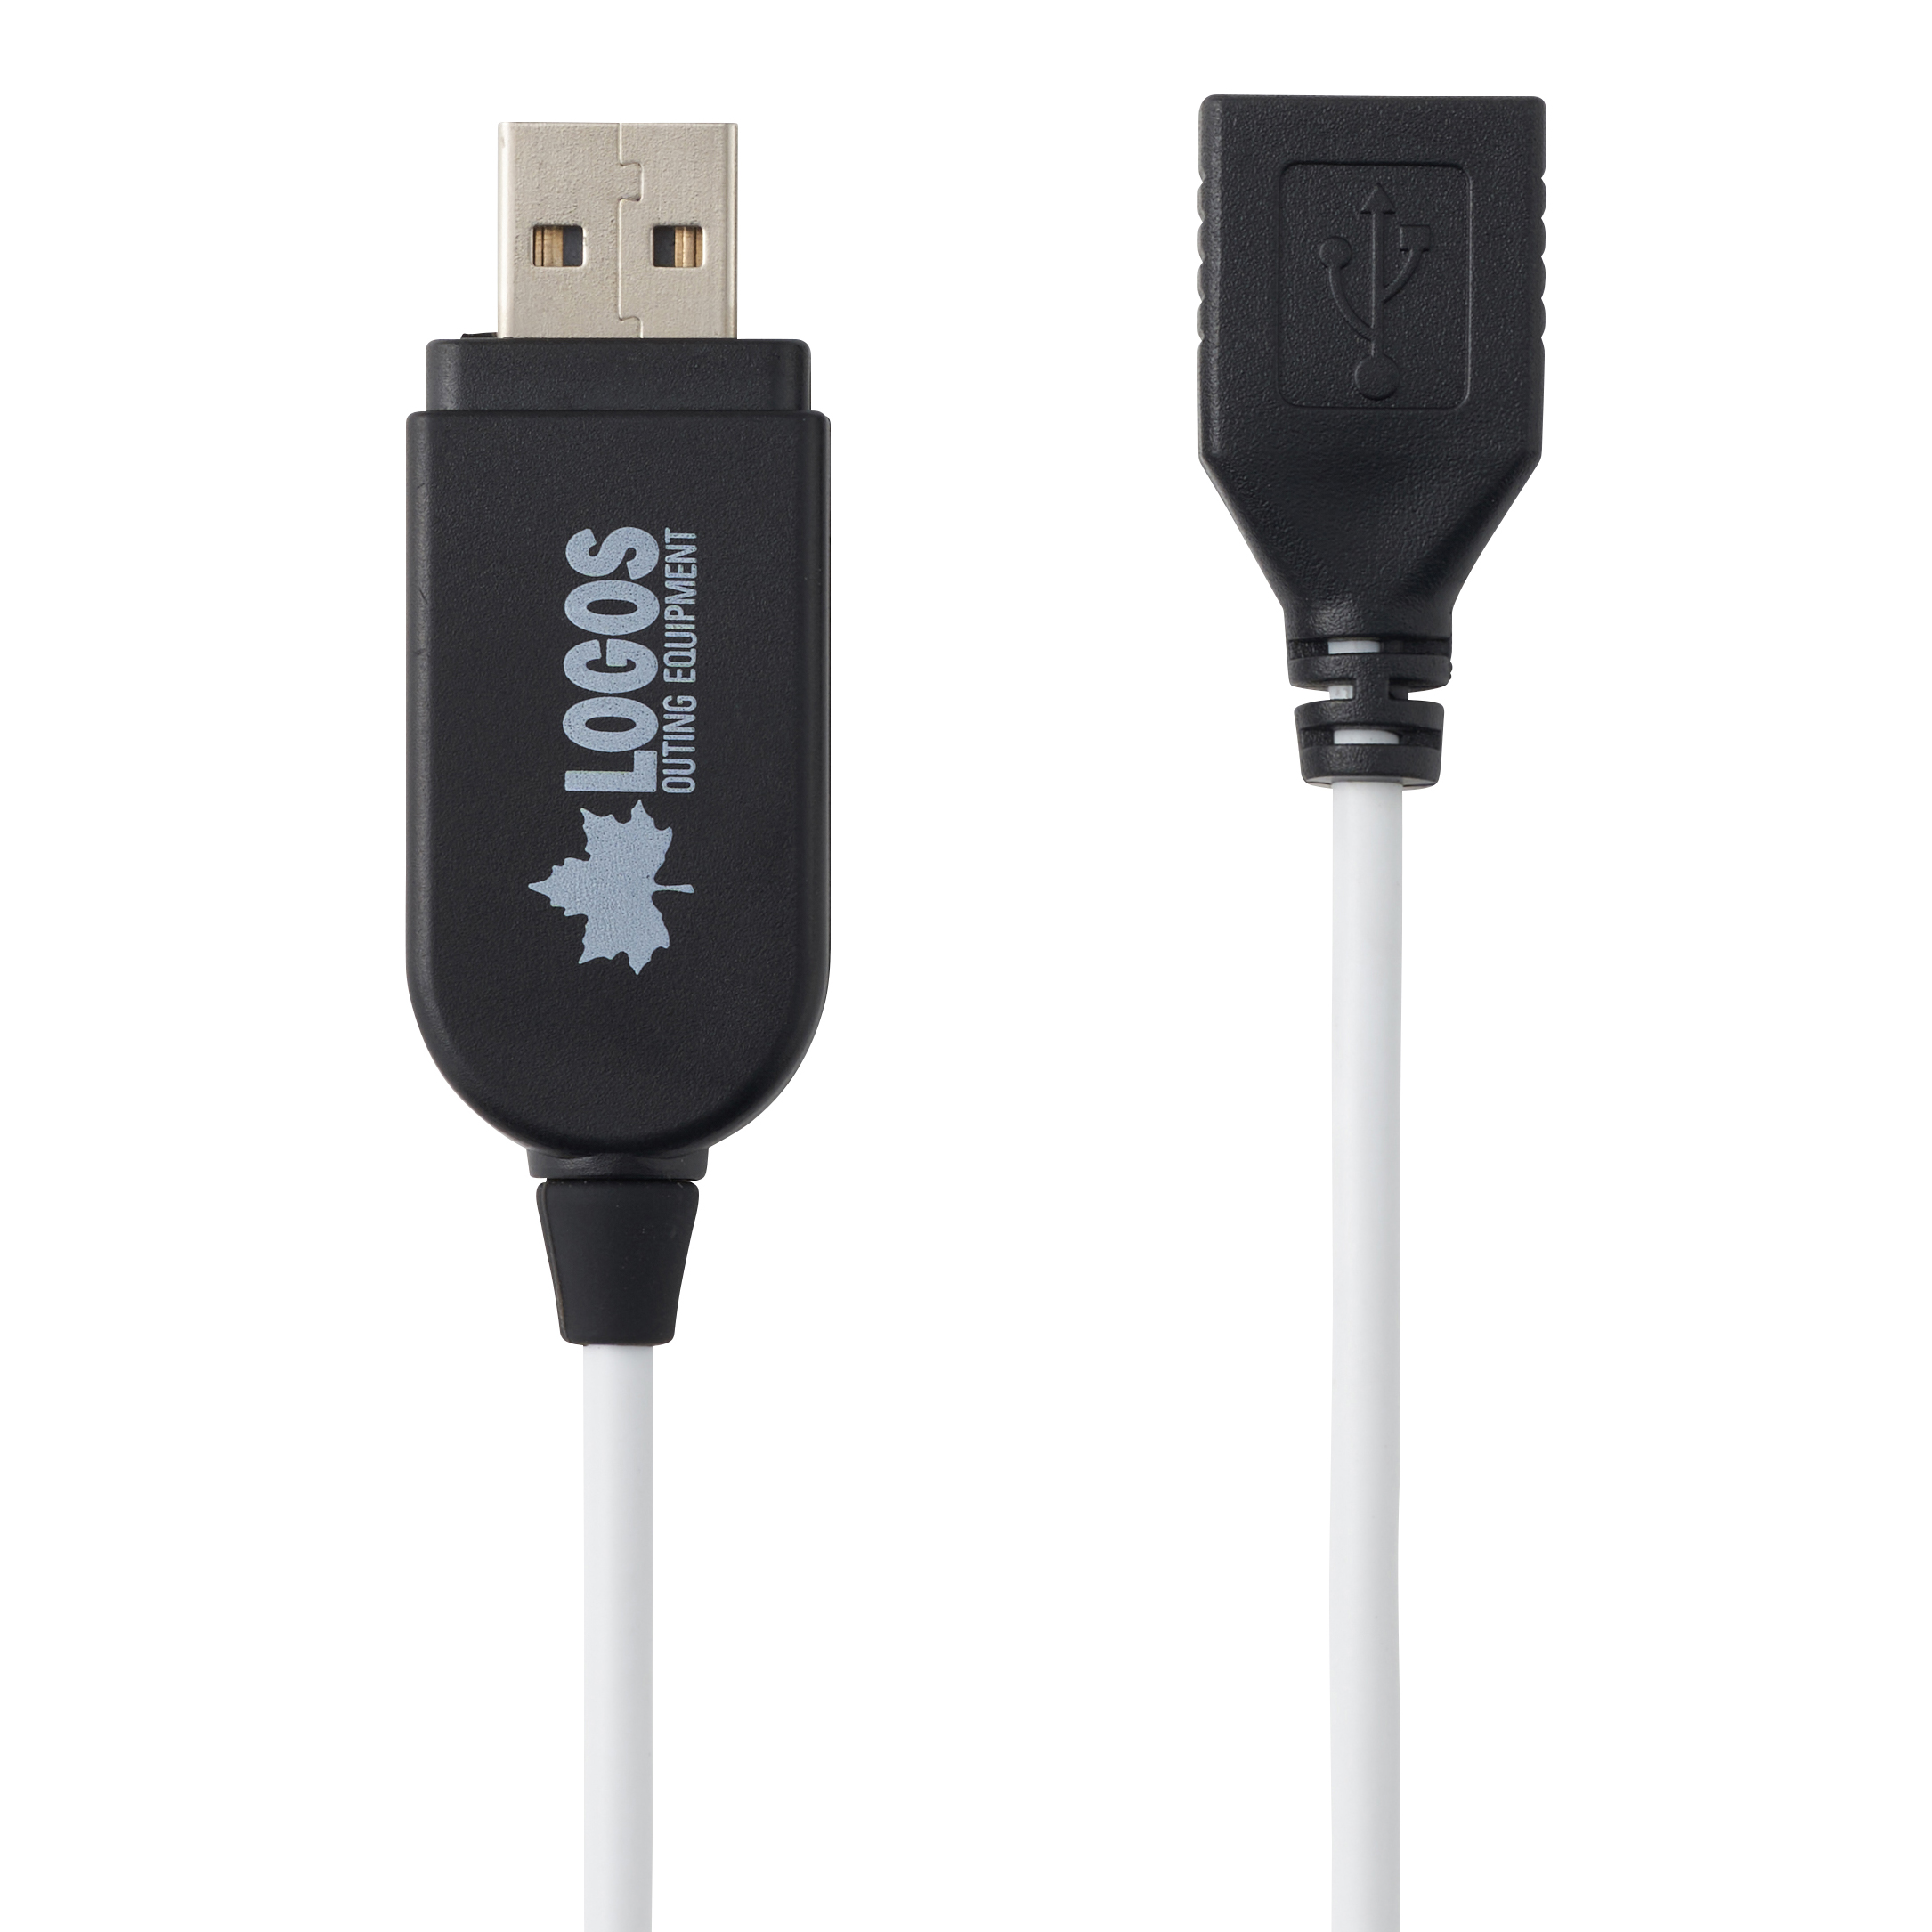 USBゆらめきバルブライト（3連タイプ）|ギア|野電|ライト|製品情報 